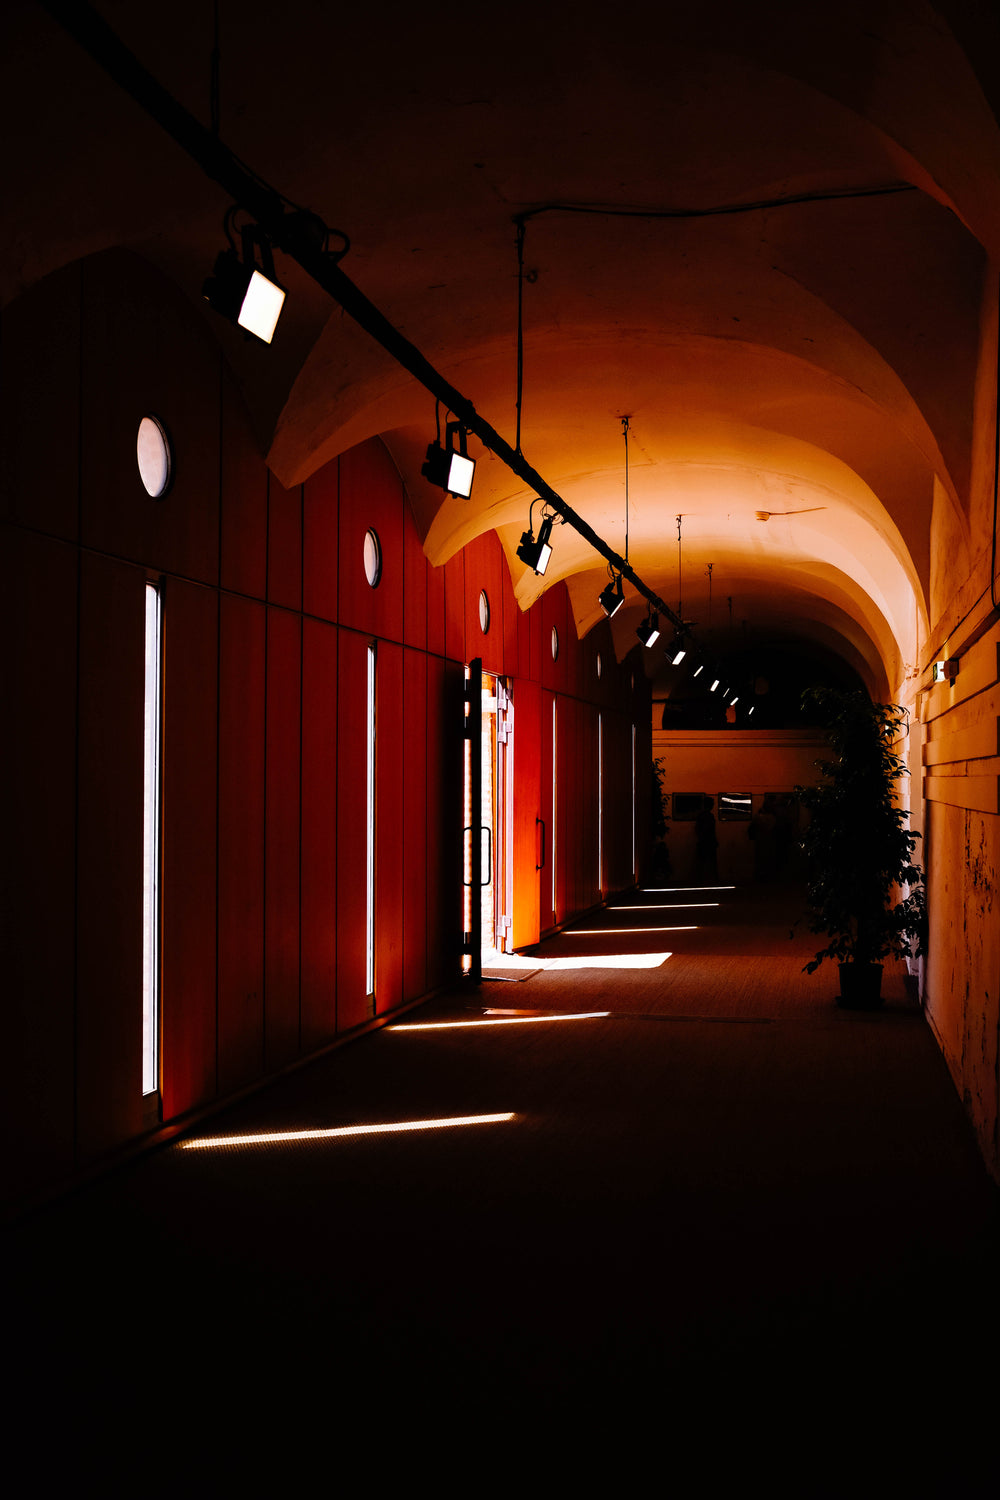 sunlight slices through narrow windows into a dark corridor